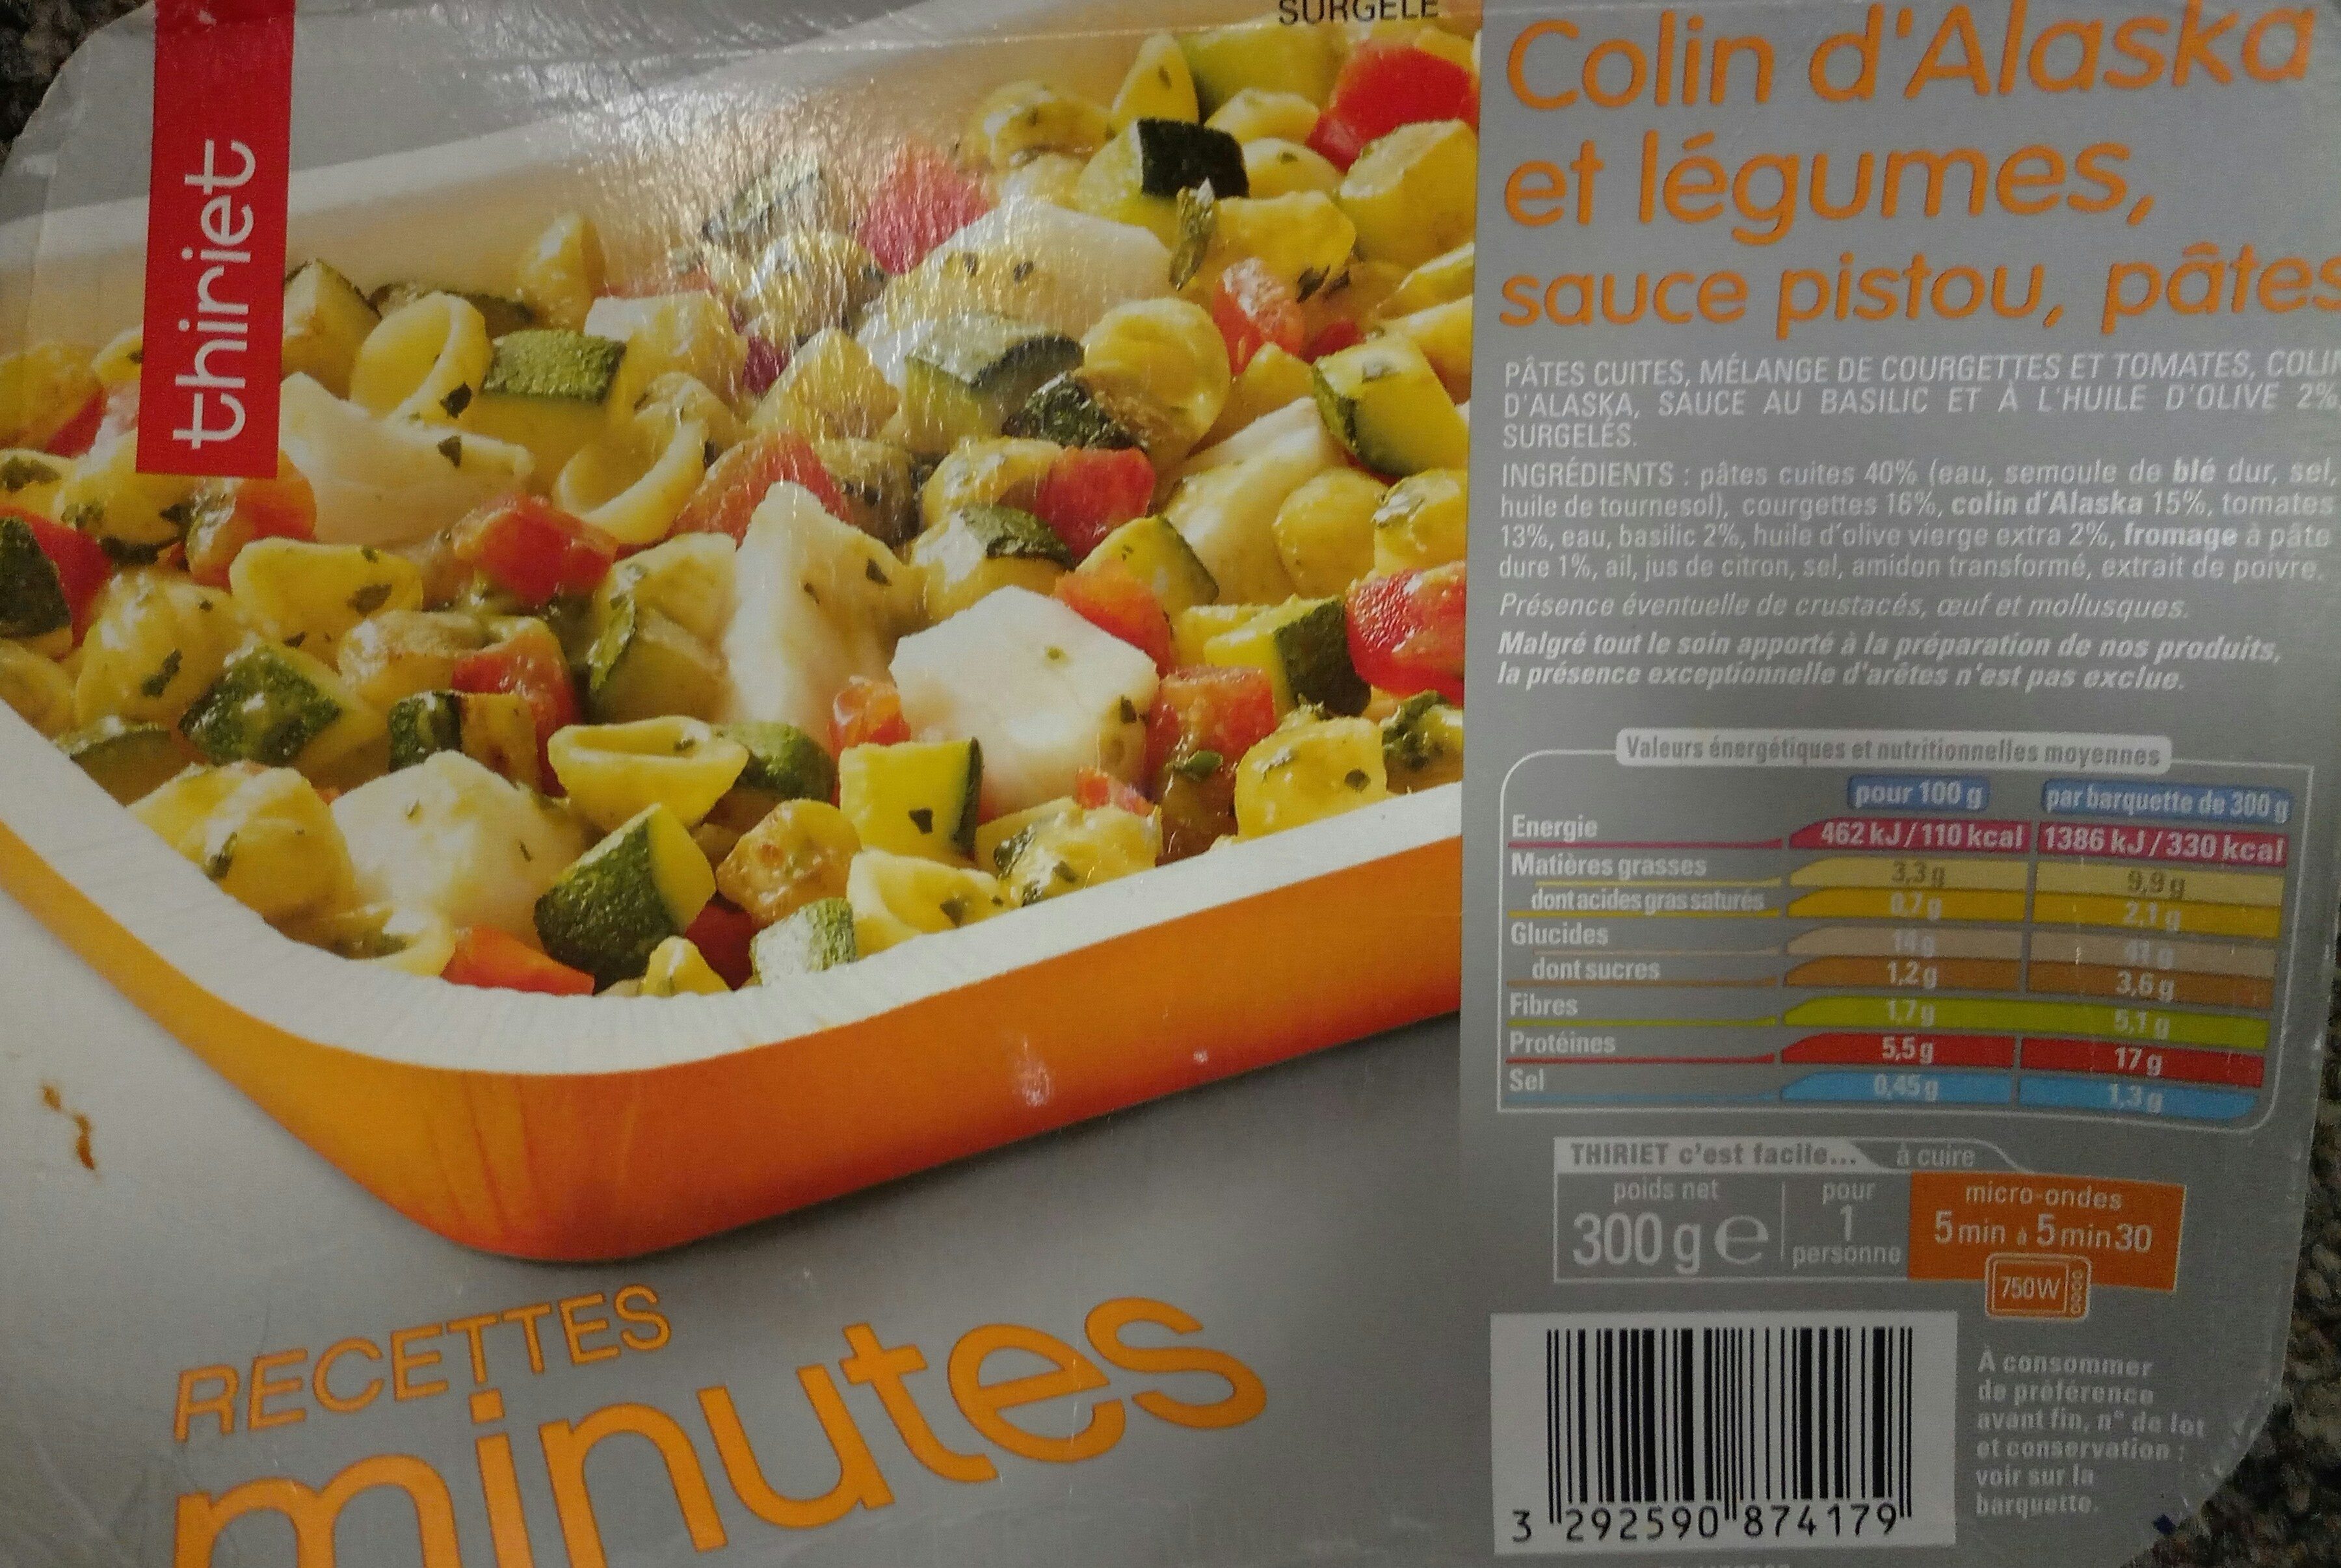 Colin d'Alaska et légumes sauces pistou, pâtes - Product - fr